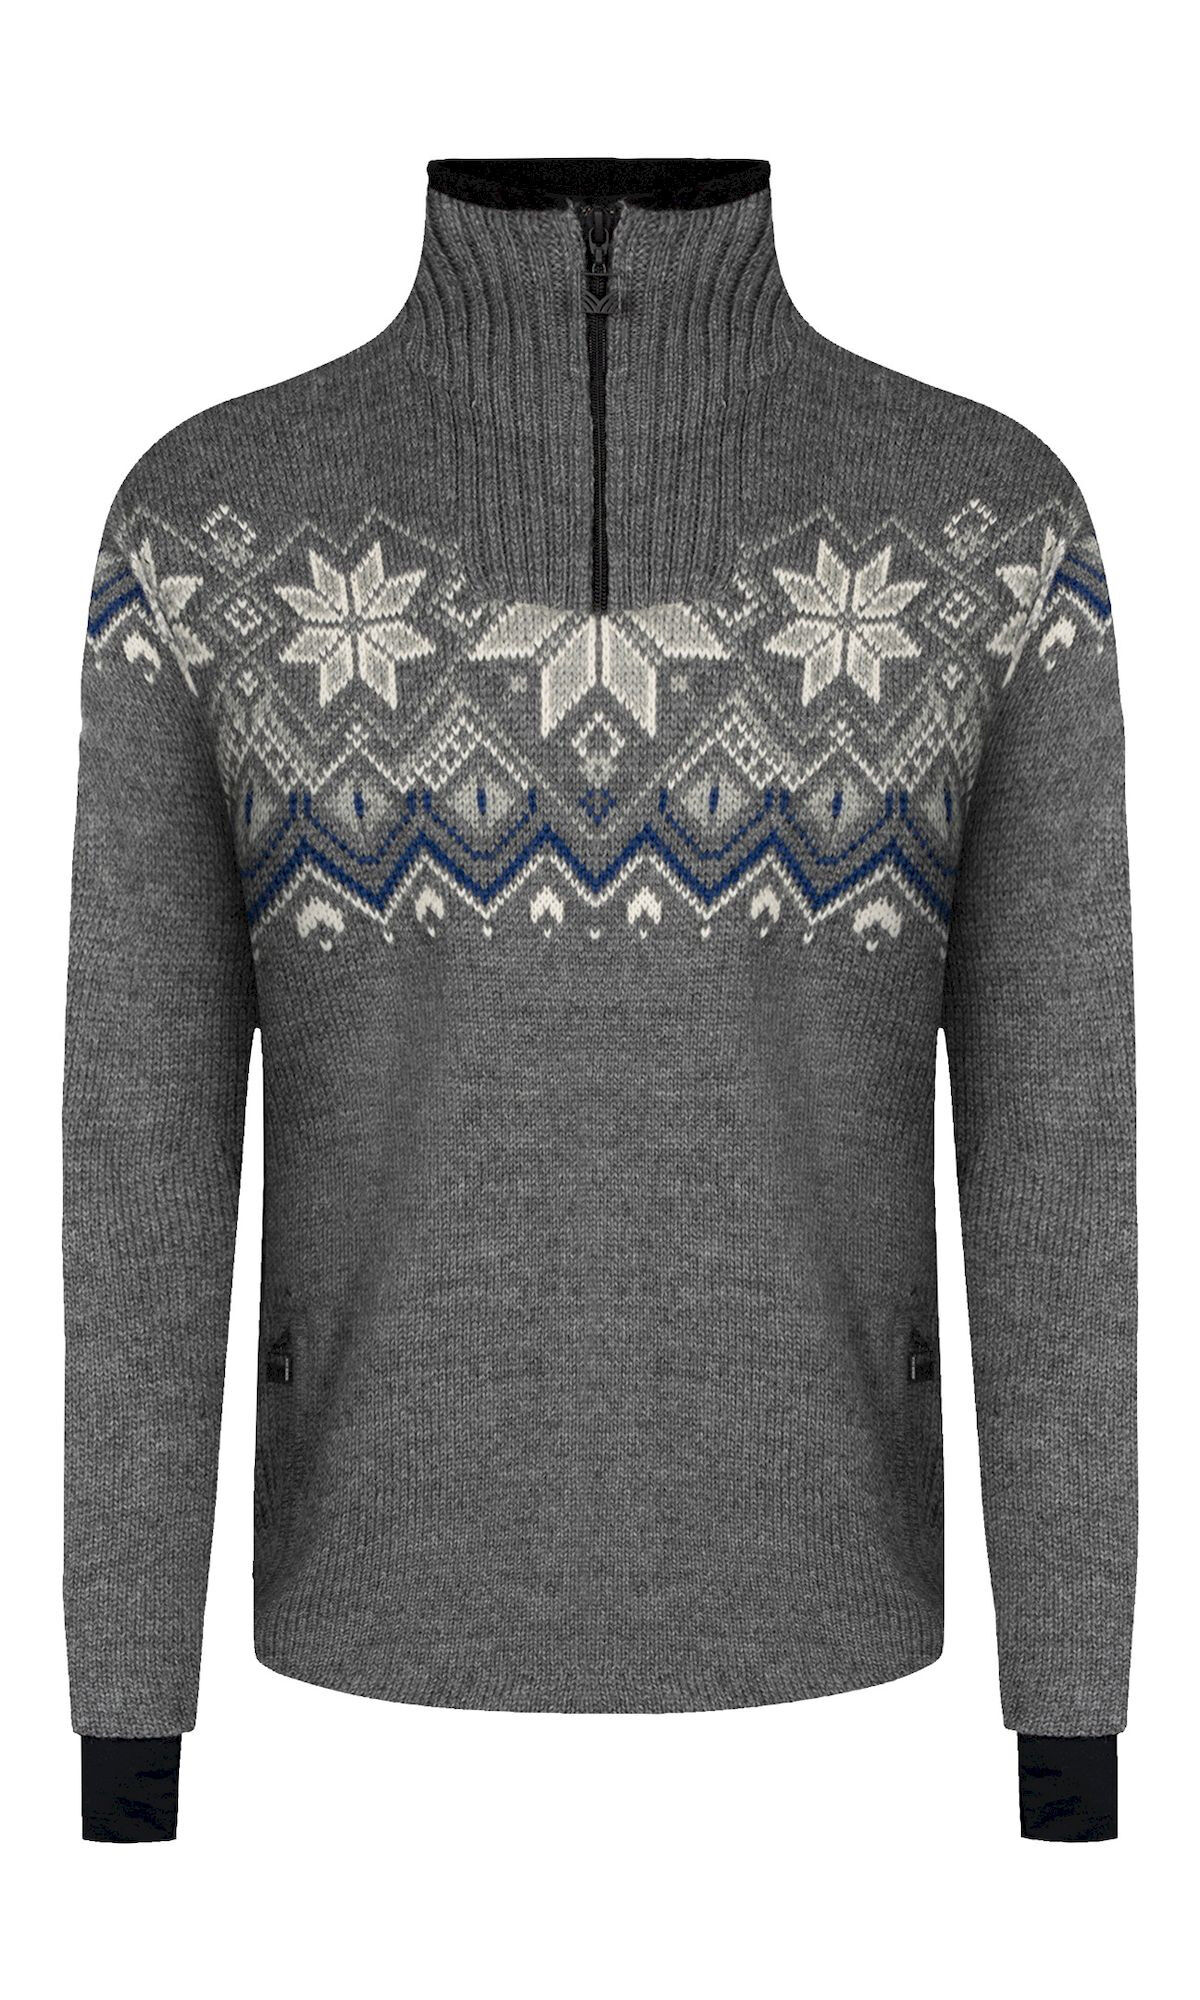 Dale of Norway Fongen Weatherproof Sweater - Pullover in lana merino - Uomo | Hardloop